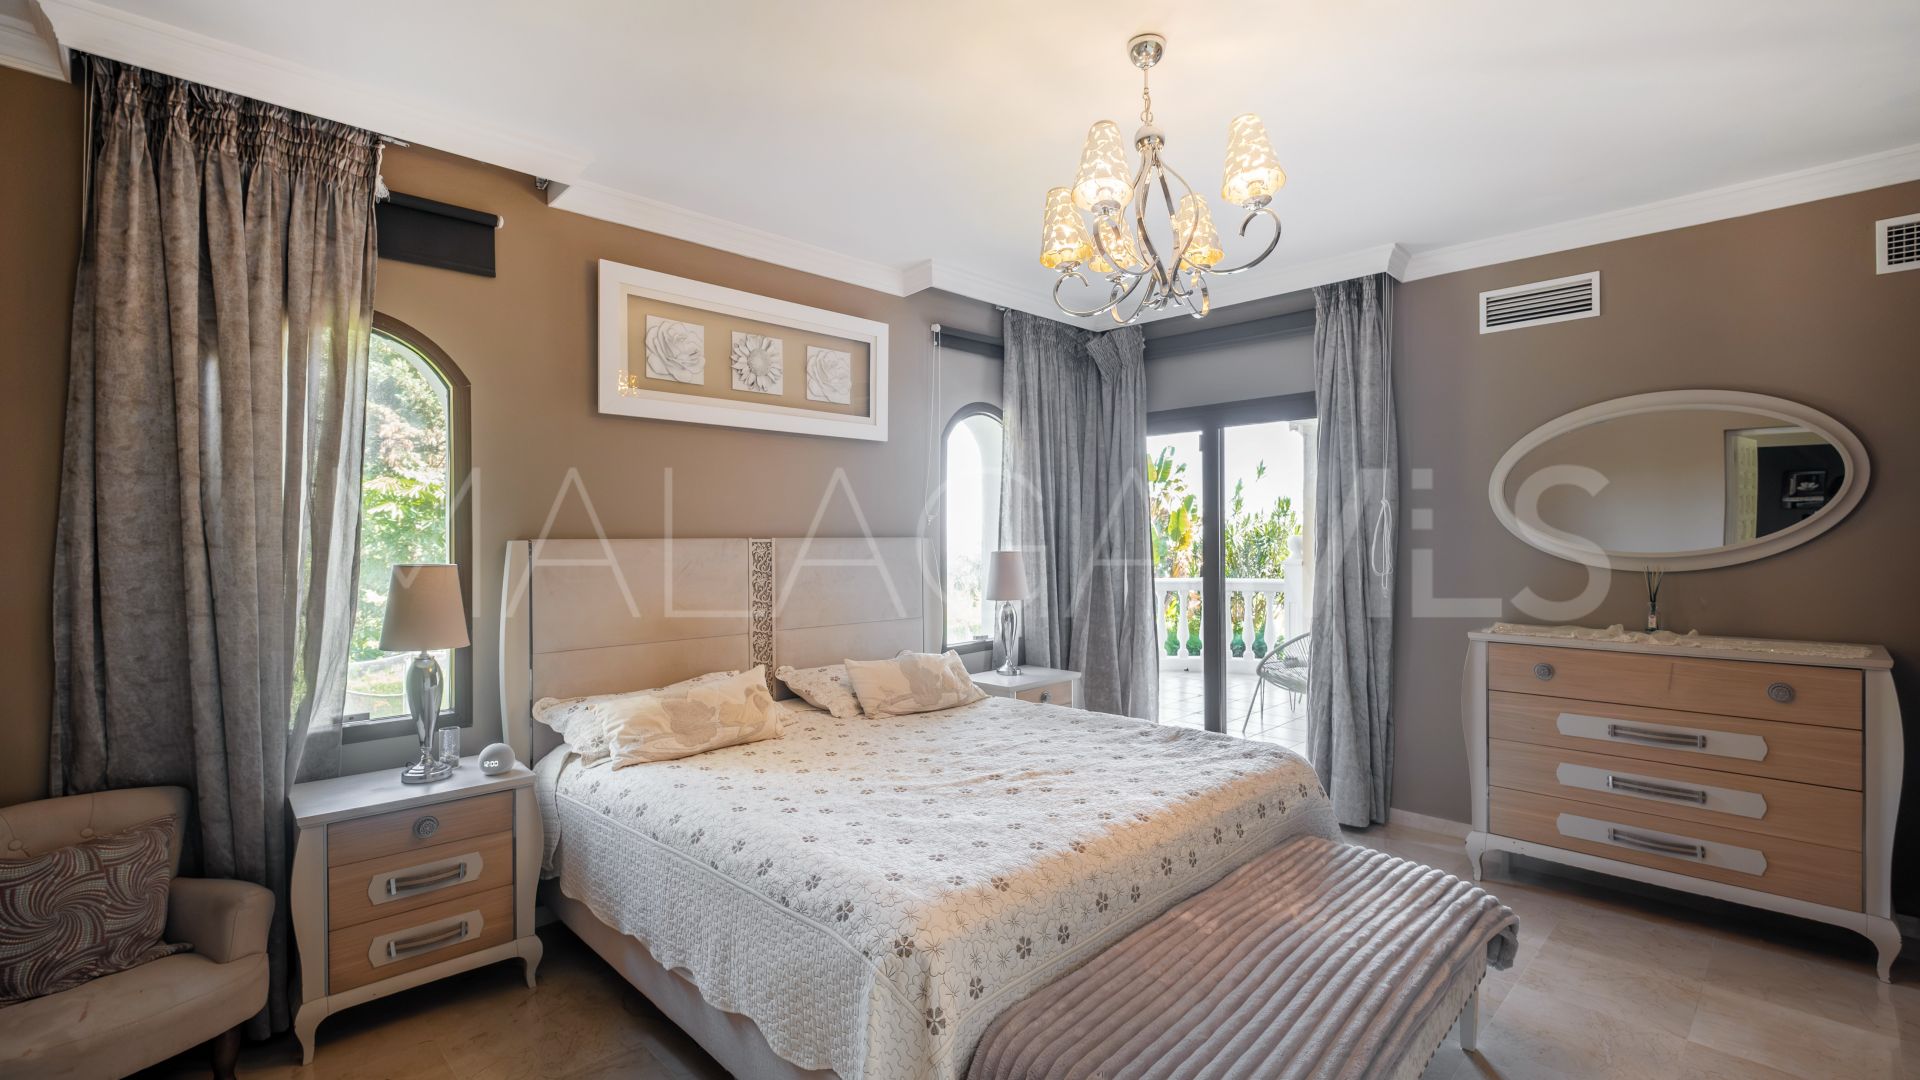 6 bedrooms El Paraiso villa for sale